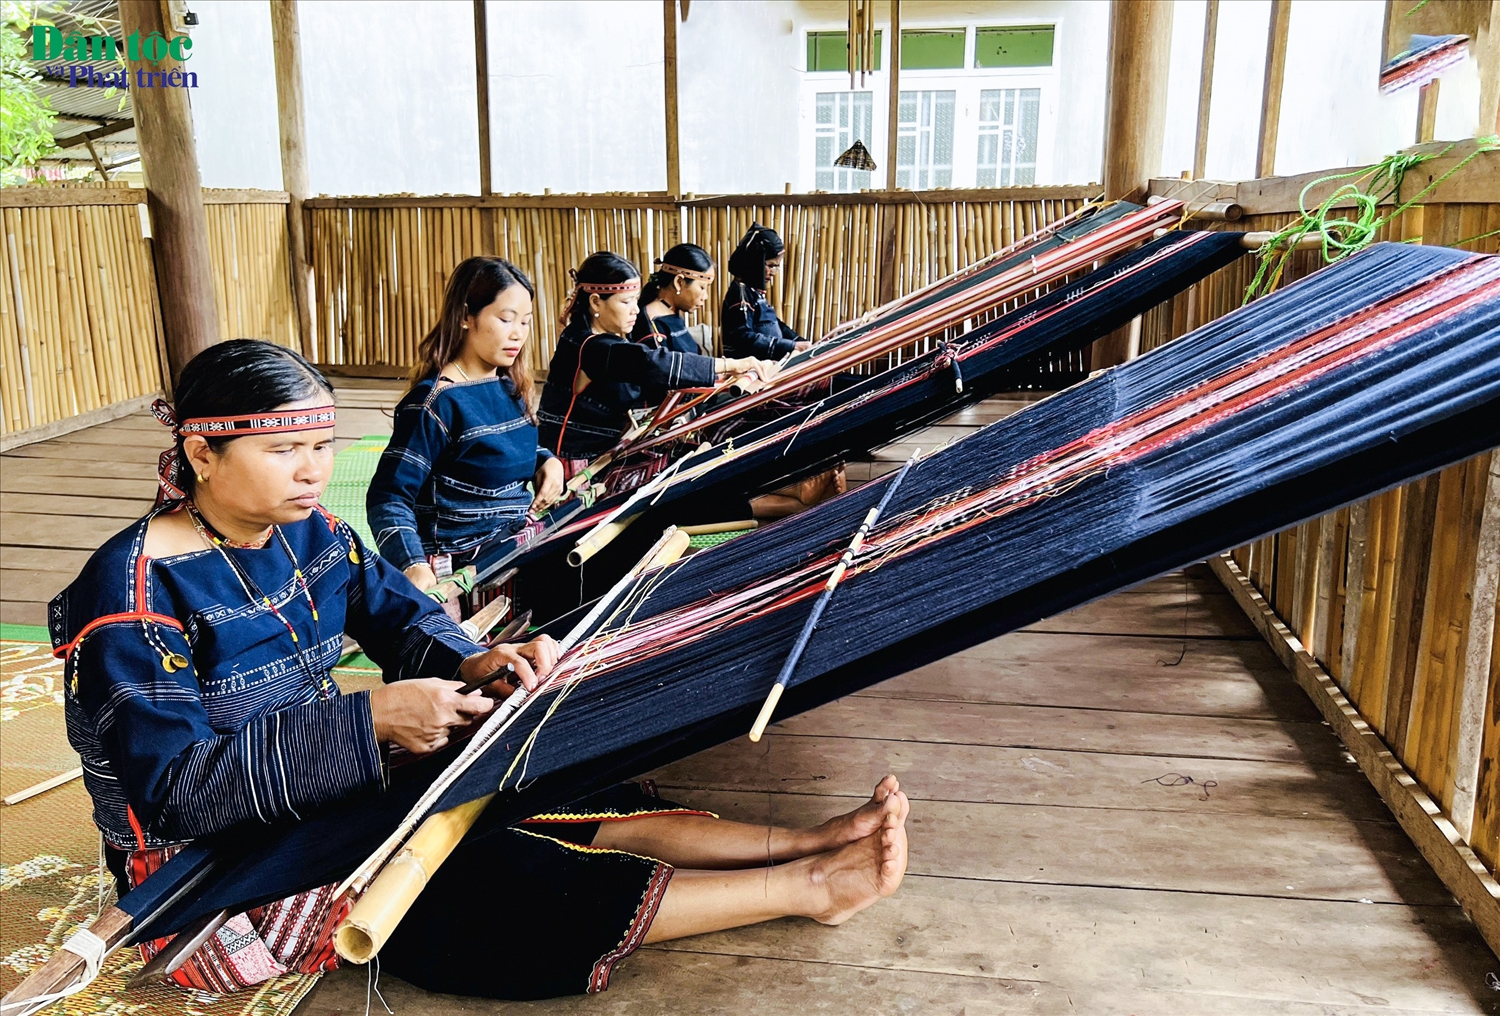 Bằng tình yêu văn hóa những người phụ nữ Ba Na ở làng Kgiang, xã Kông Lơng Khơng (huyện Kbang, Gia Lai) đều giữ gìn nghề dệt trong gia đình